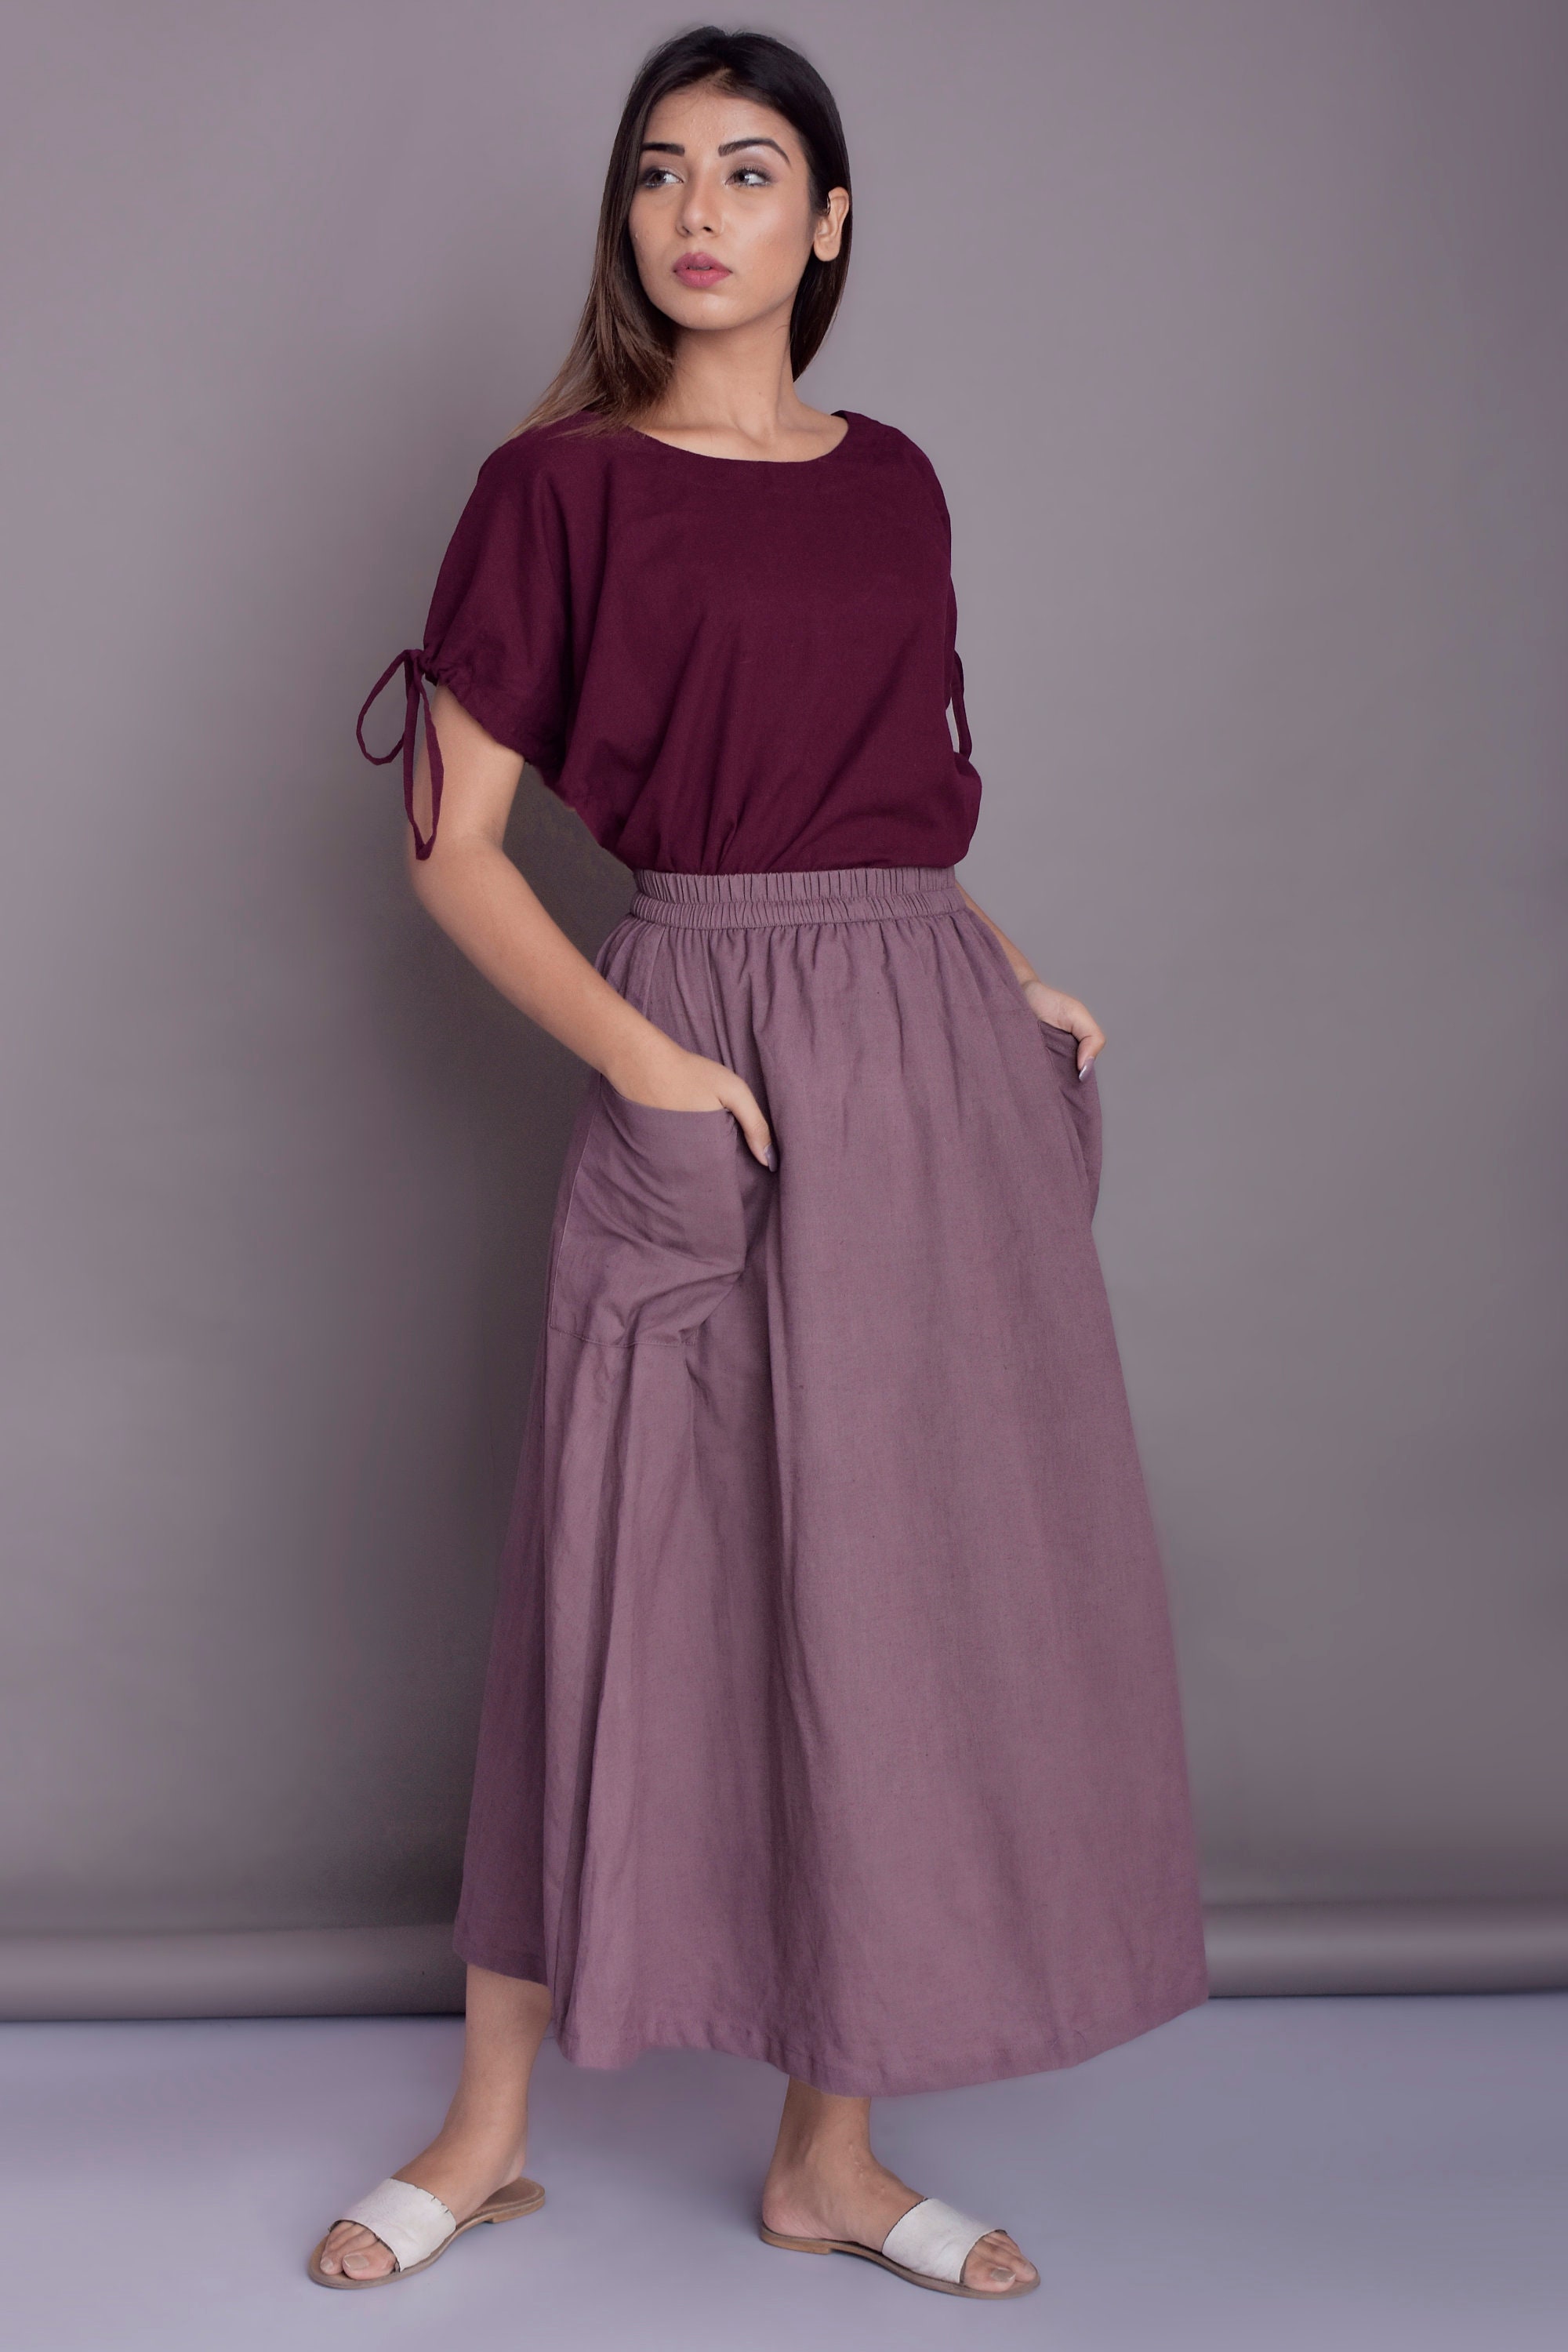 Patch Pocket Skirt Maxi Skirt Casual Linen Skirt Full - Etsy